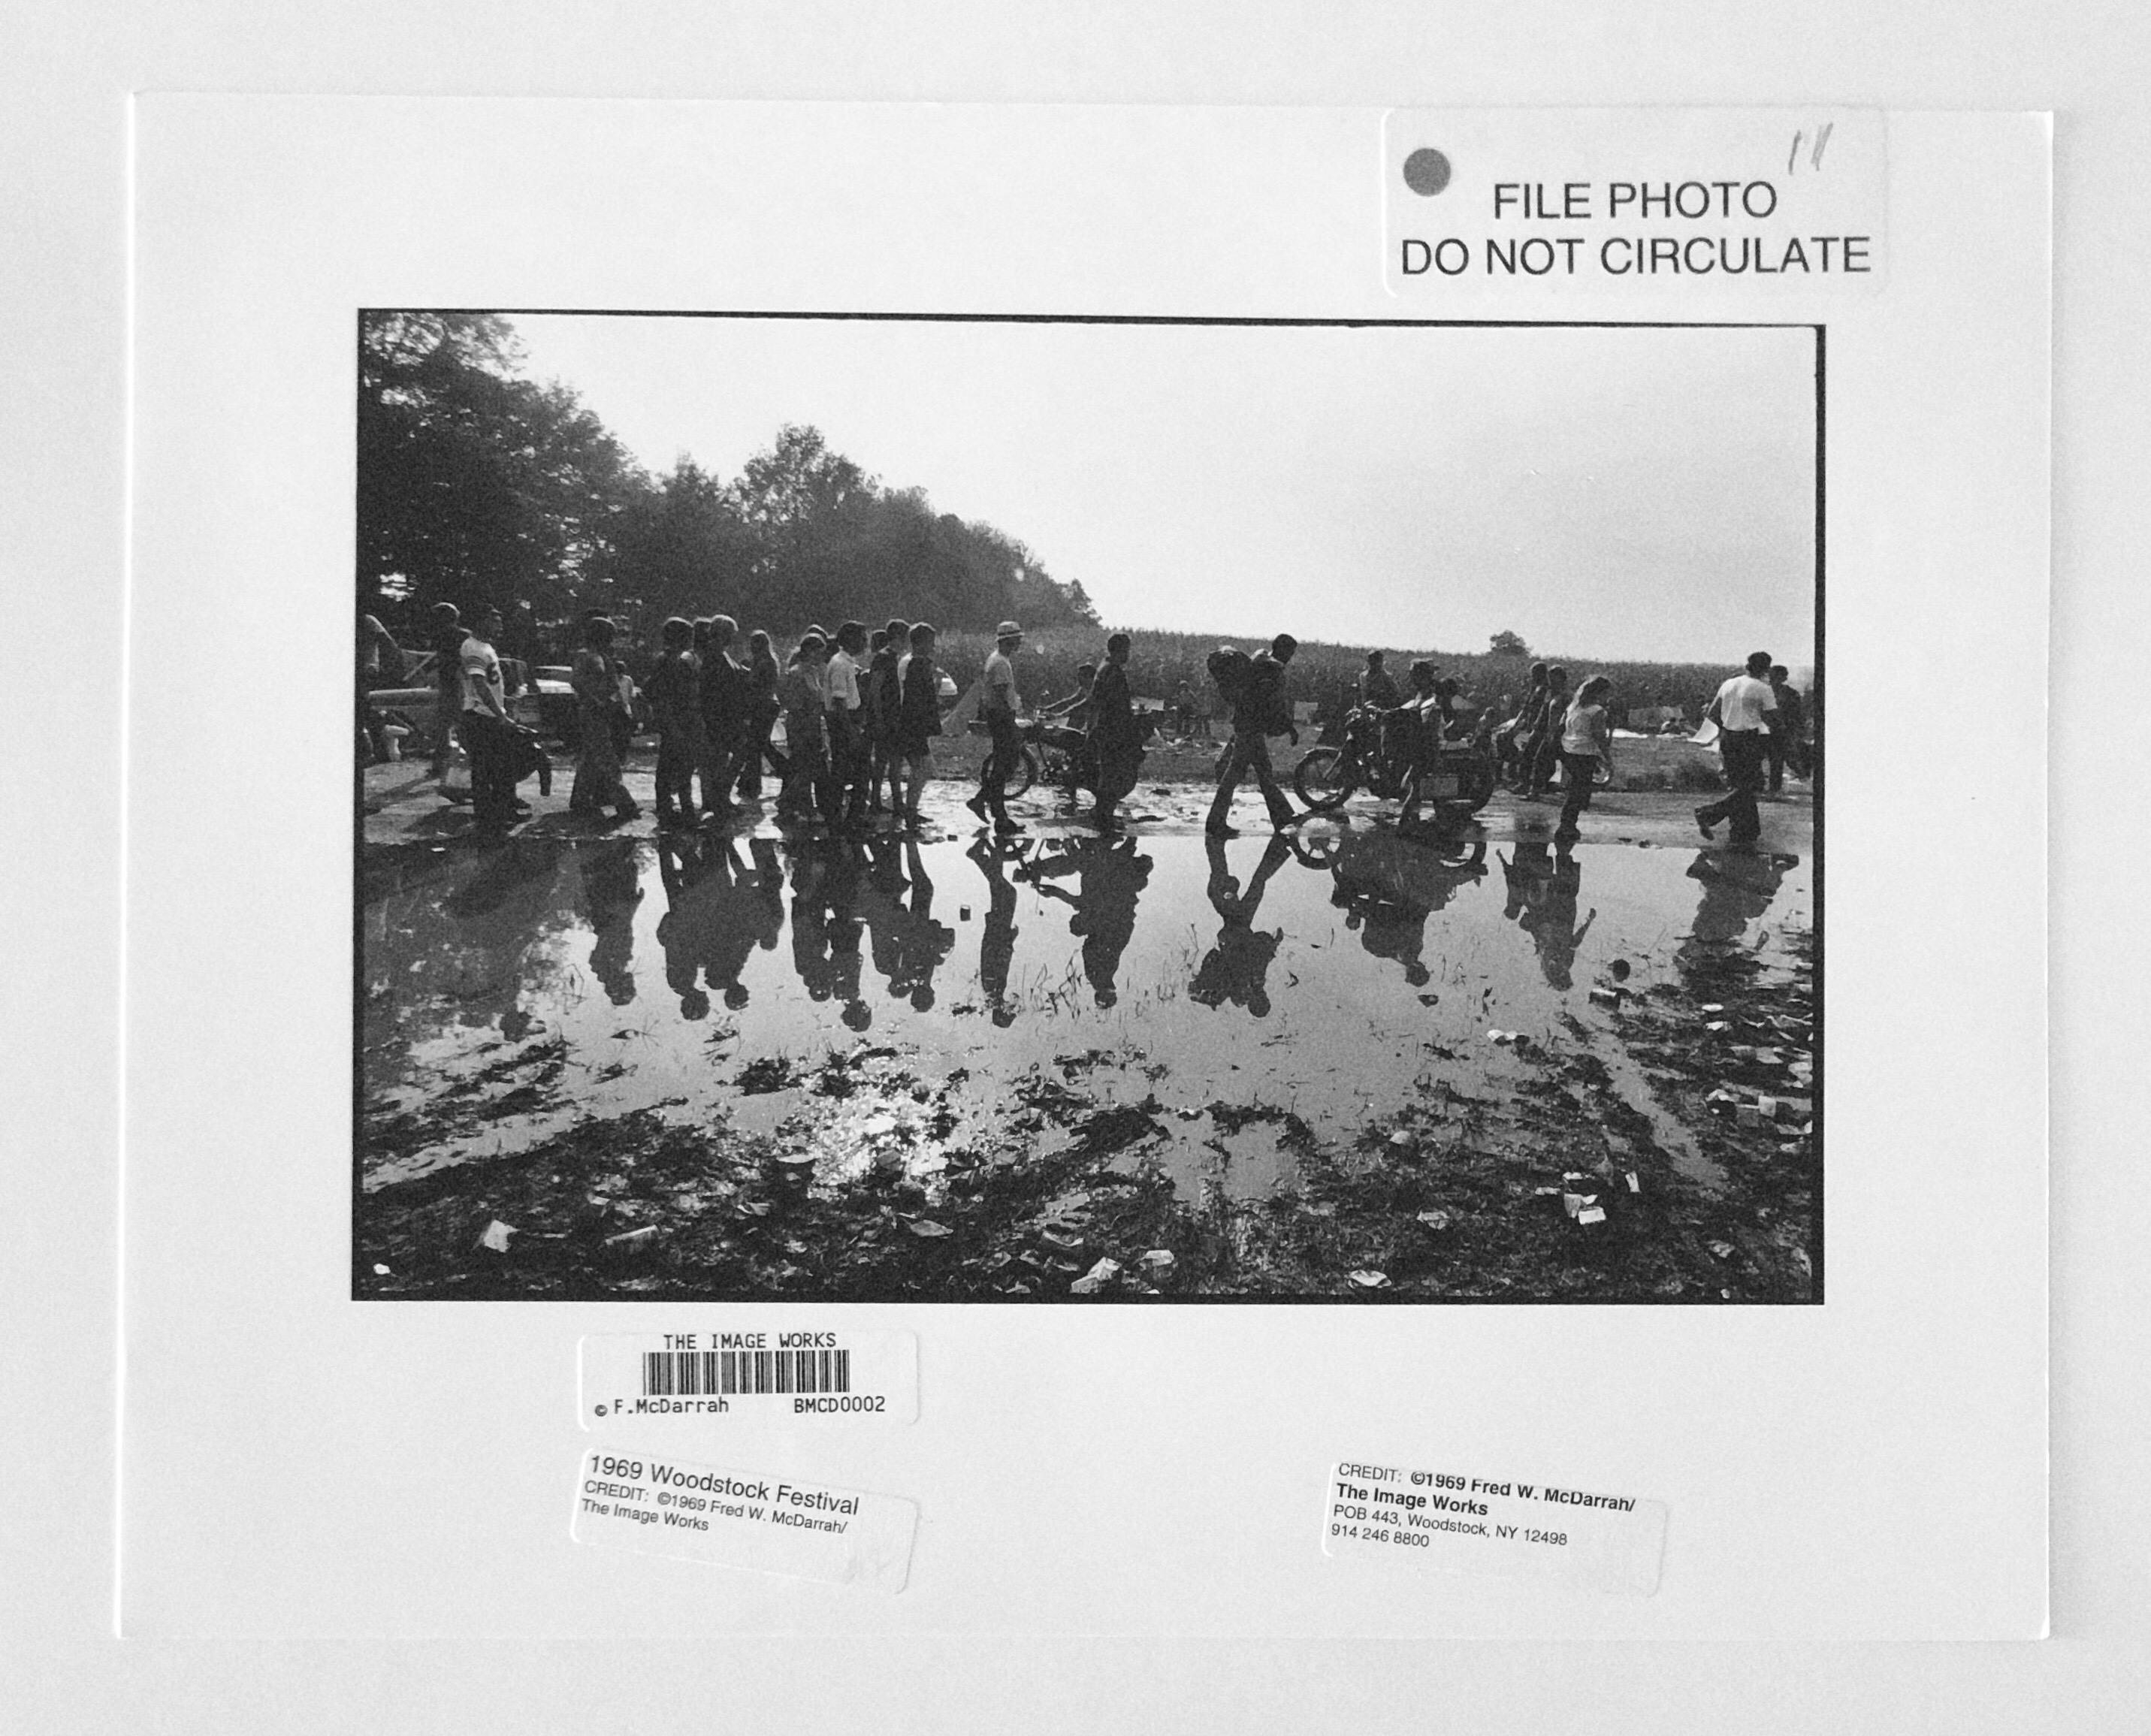 Original Fred Mcdarrah Press Fotografie 1960er Woodstock Musik Festival Foto (Schwarz), Black and White Photograph, von (after) Fred Mcdarrah